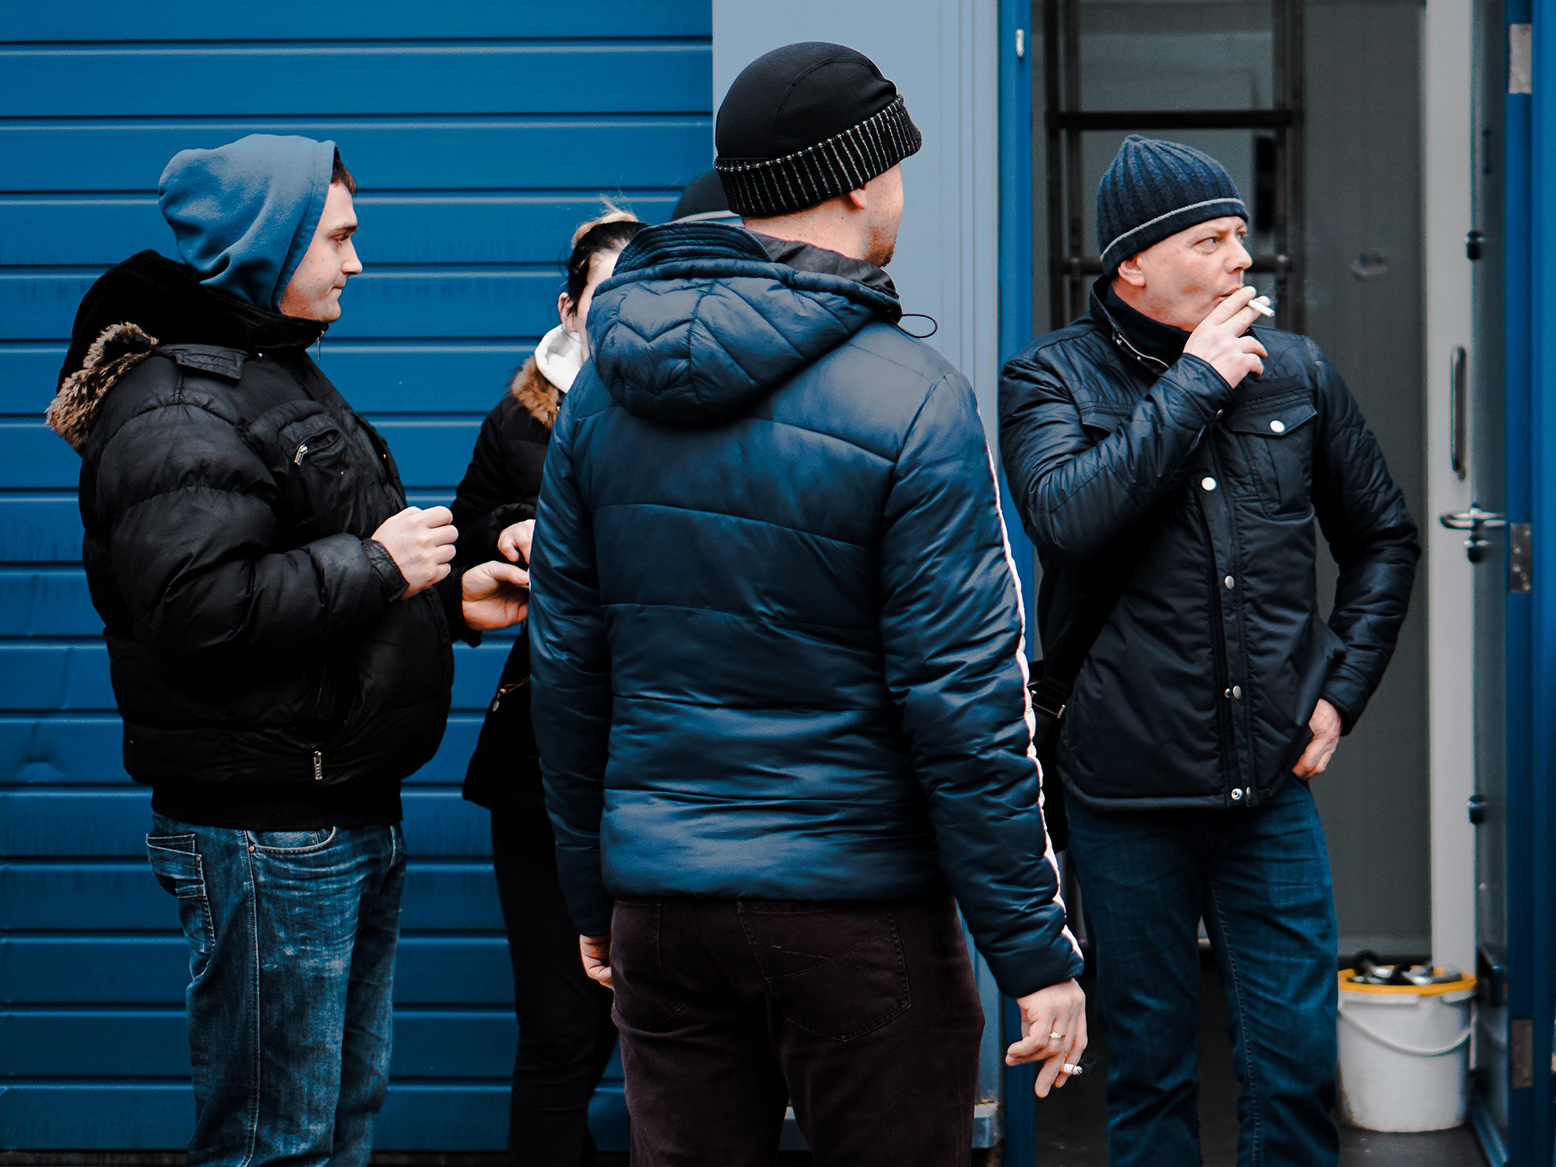 Men in a group, smoking